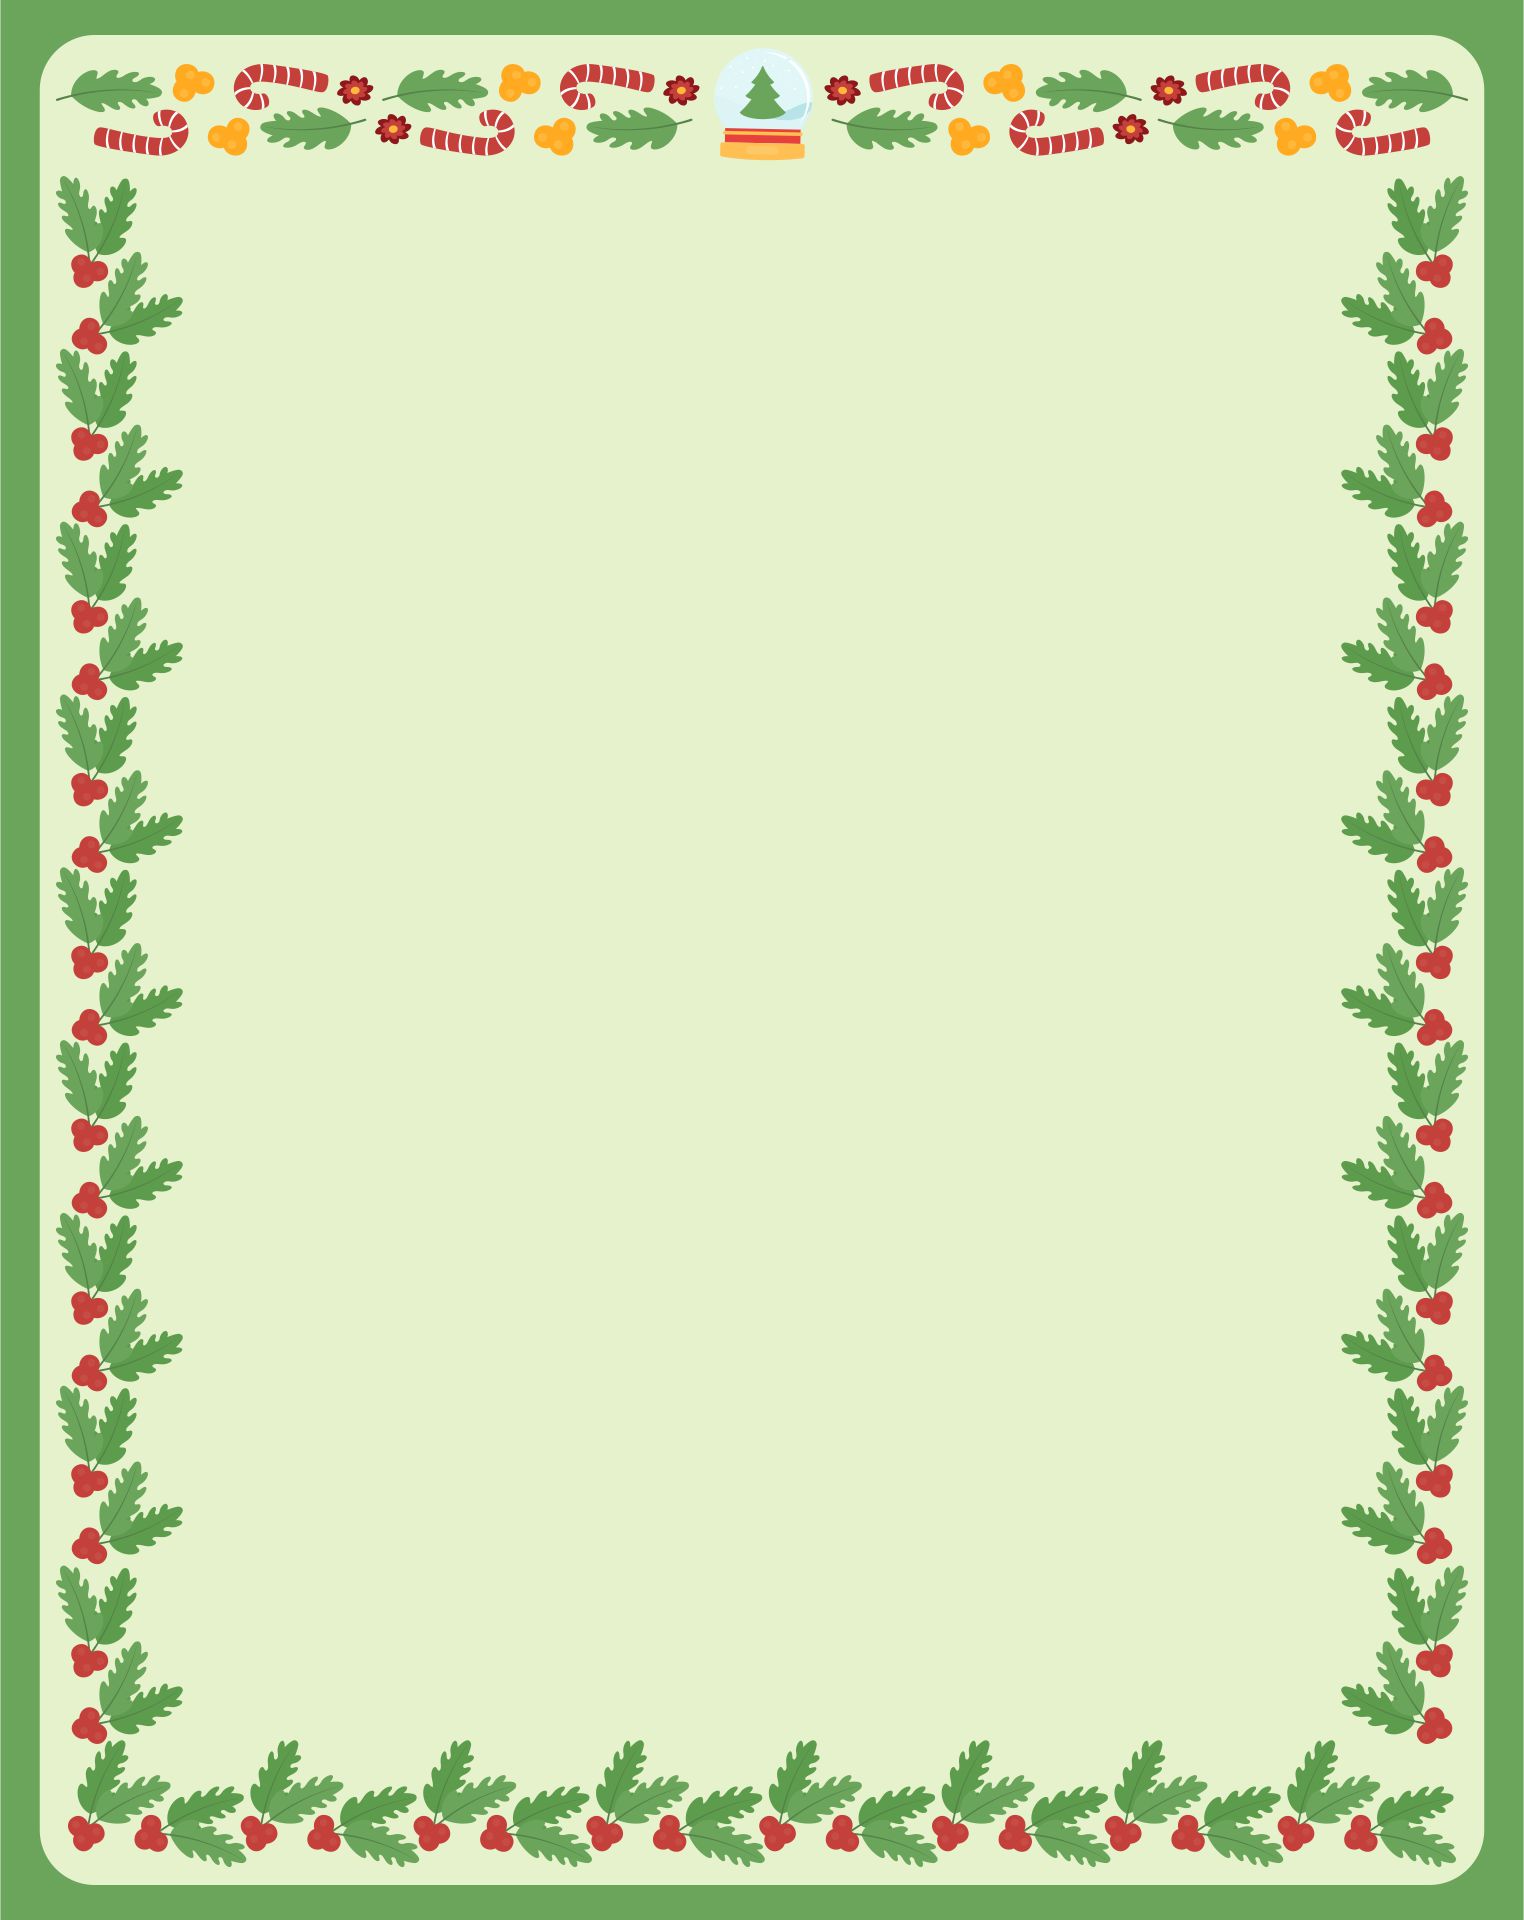 Free Printable Christmas Border Designs